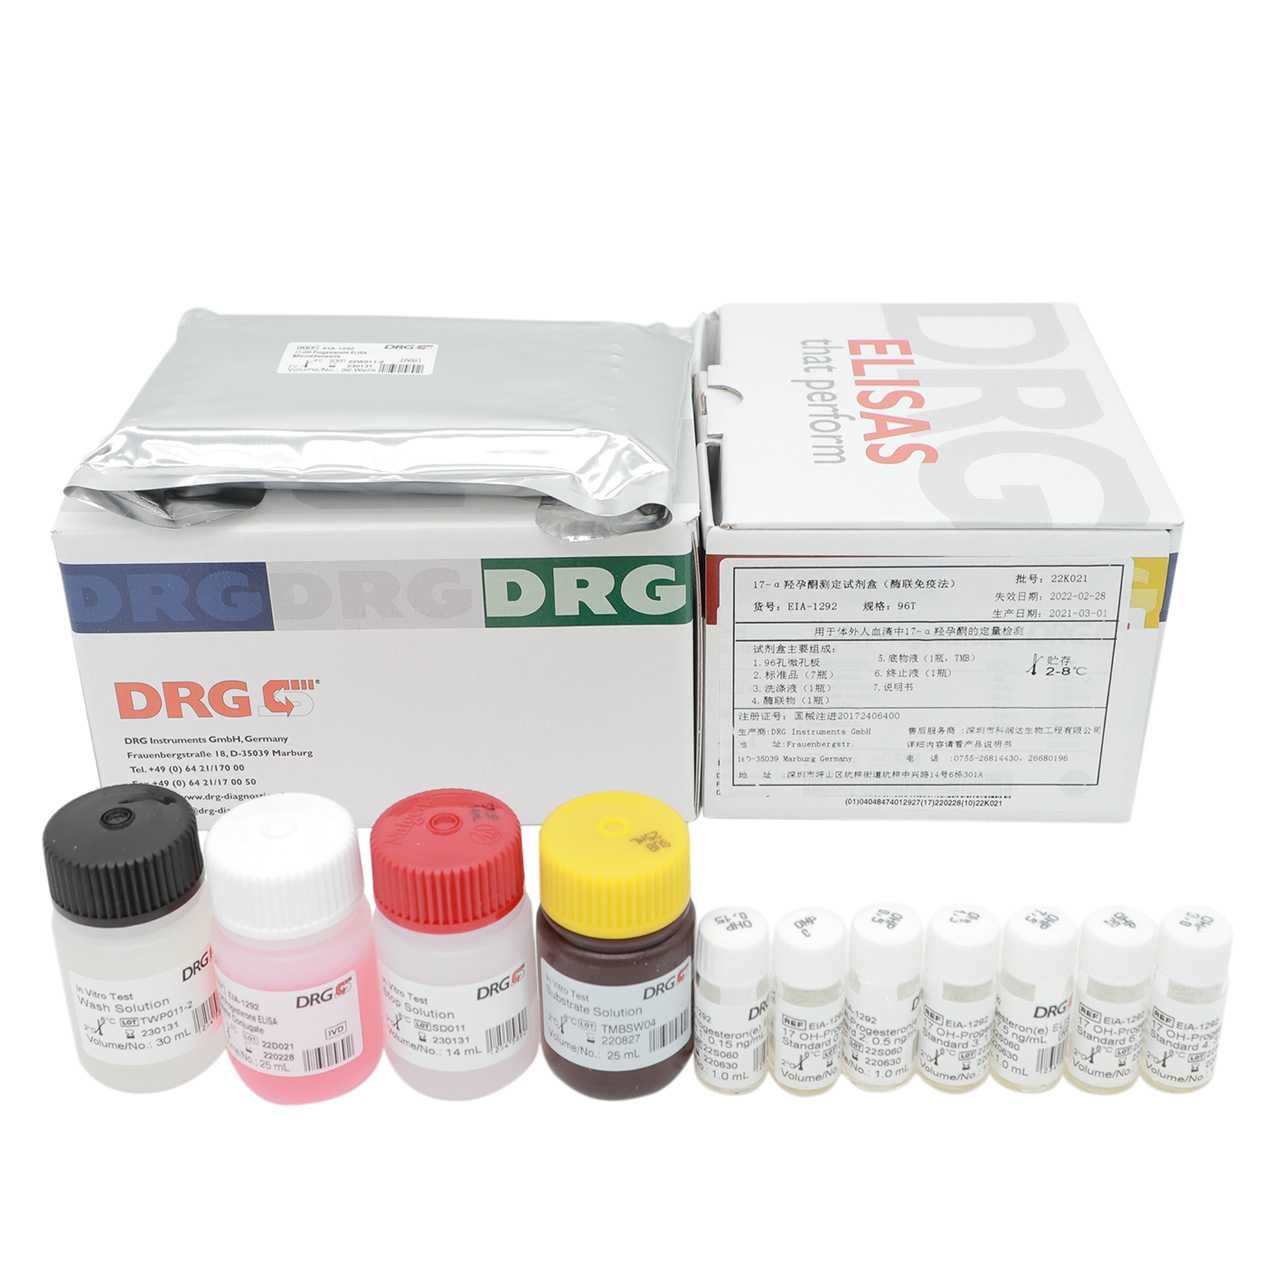 人绒毛膜促性腺激素（HCG)检测试剂盒